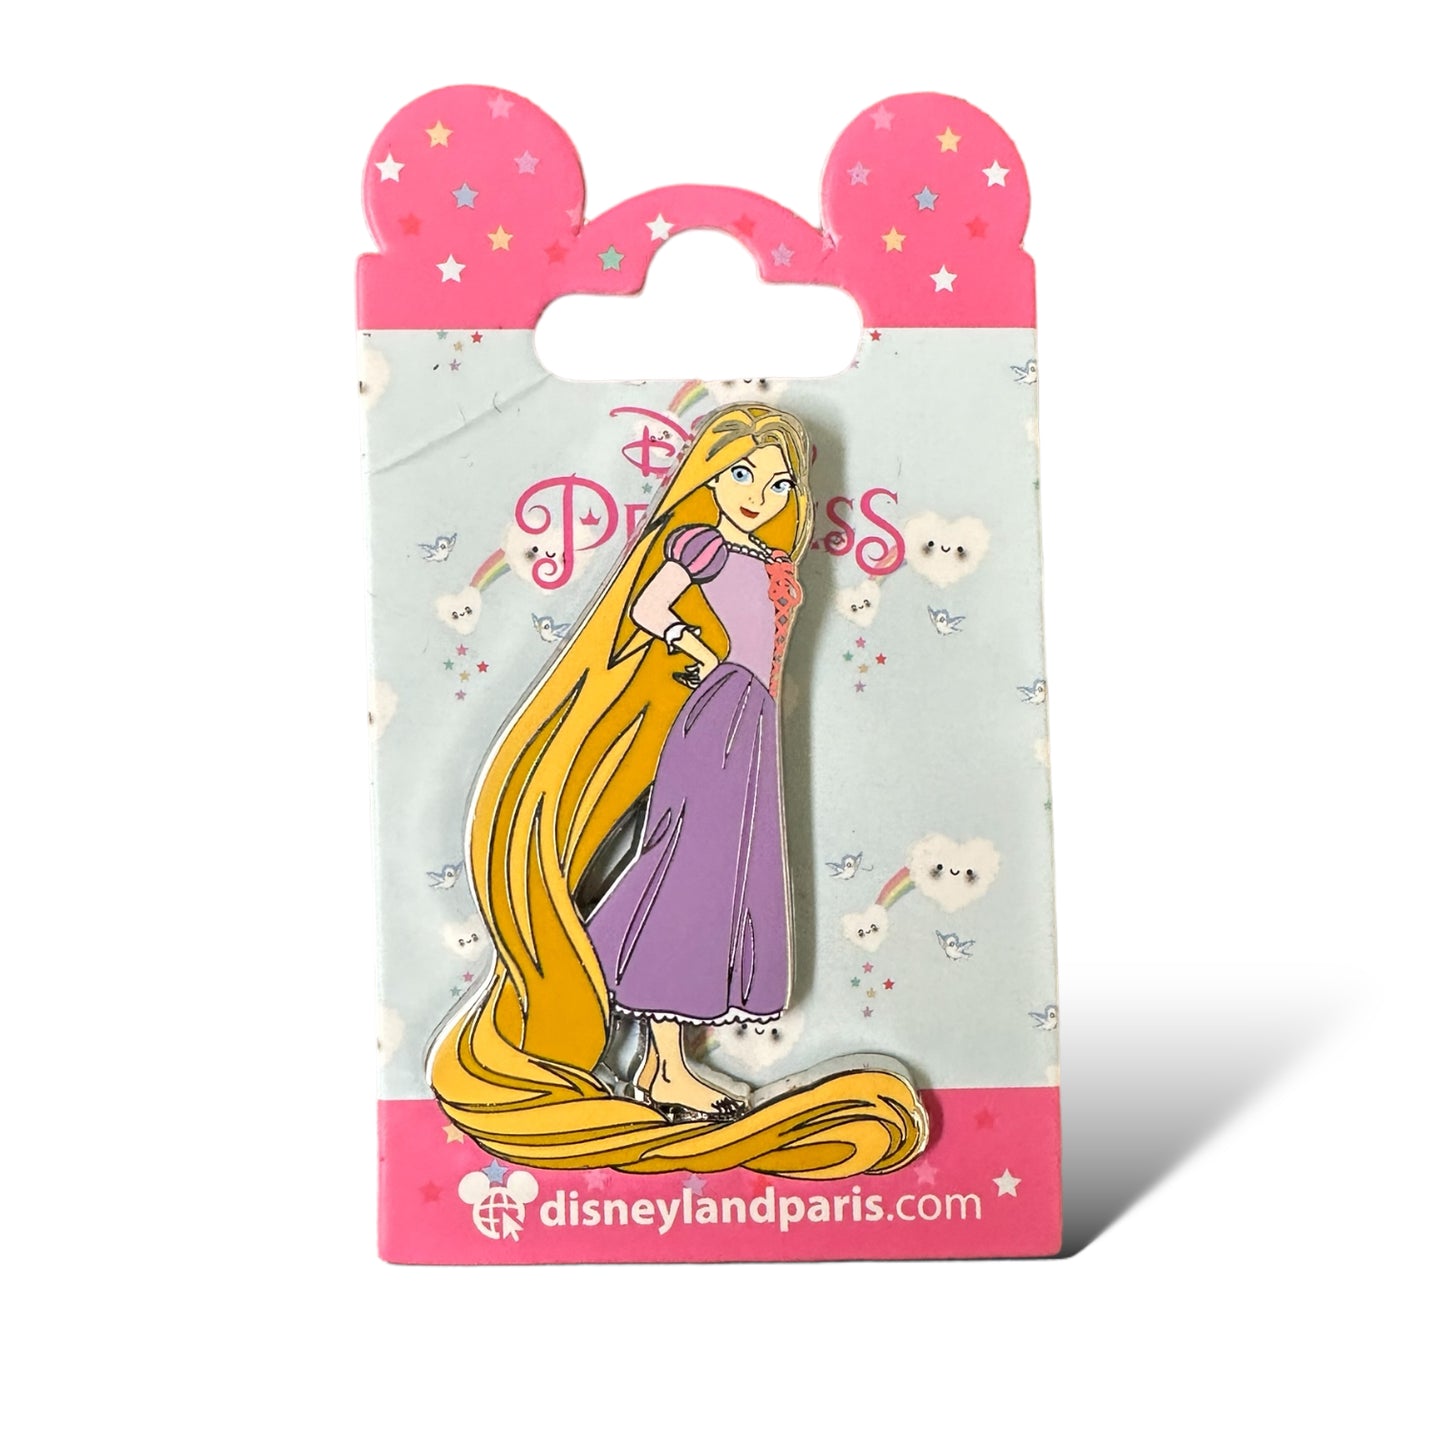 DLRP Princess Poses Rapunzel Pin